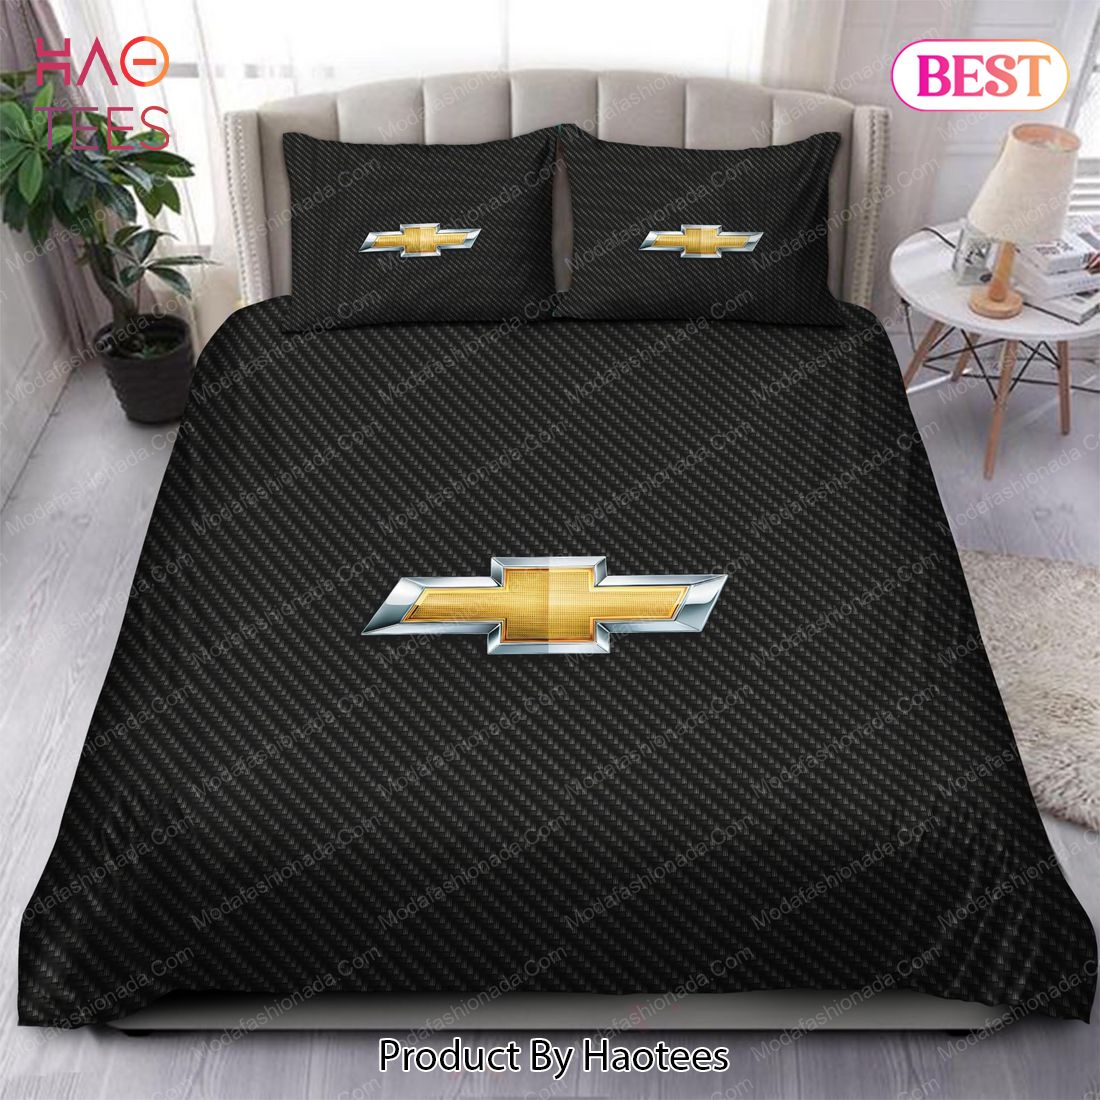 Buy Chevrolet Chevy Bedding Sets Bed Sets, Bedroom Sets, Comforter Sets, Duvet Cover, Bedspread